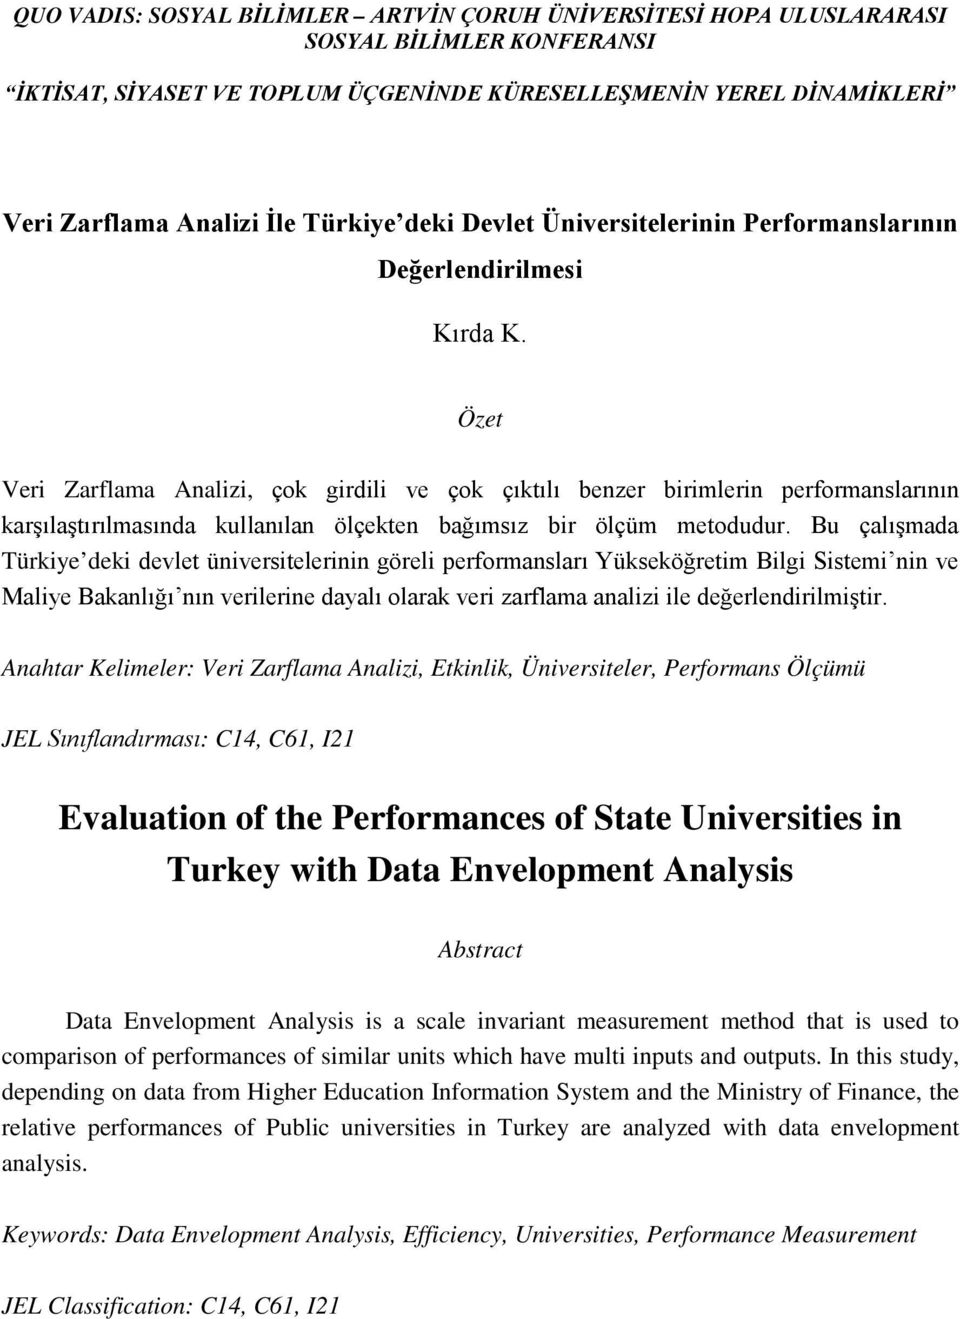 Bu çalışmada Türkiye deki devlet üniversitelerinin göreli performansları Yükseköğretim Bilgi Sistemi nin ve Maliye Bakanlığı nın verilerine dayalı olarak veri zarflama analizi ile değerlendirilmiştir.